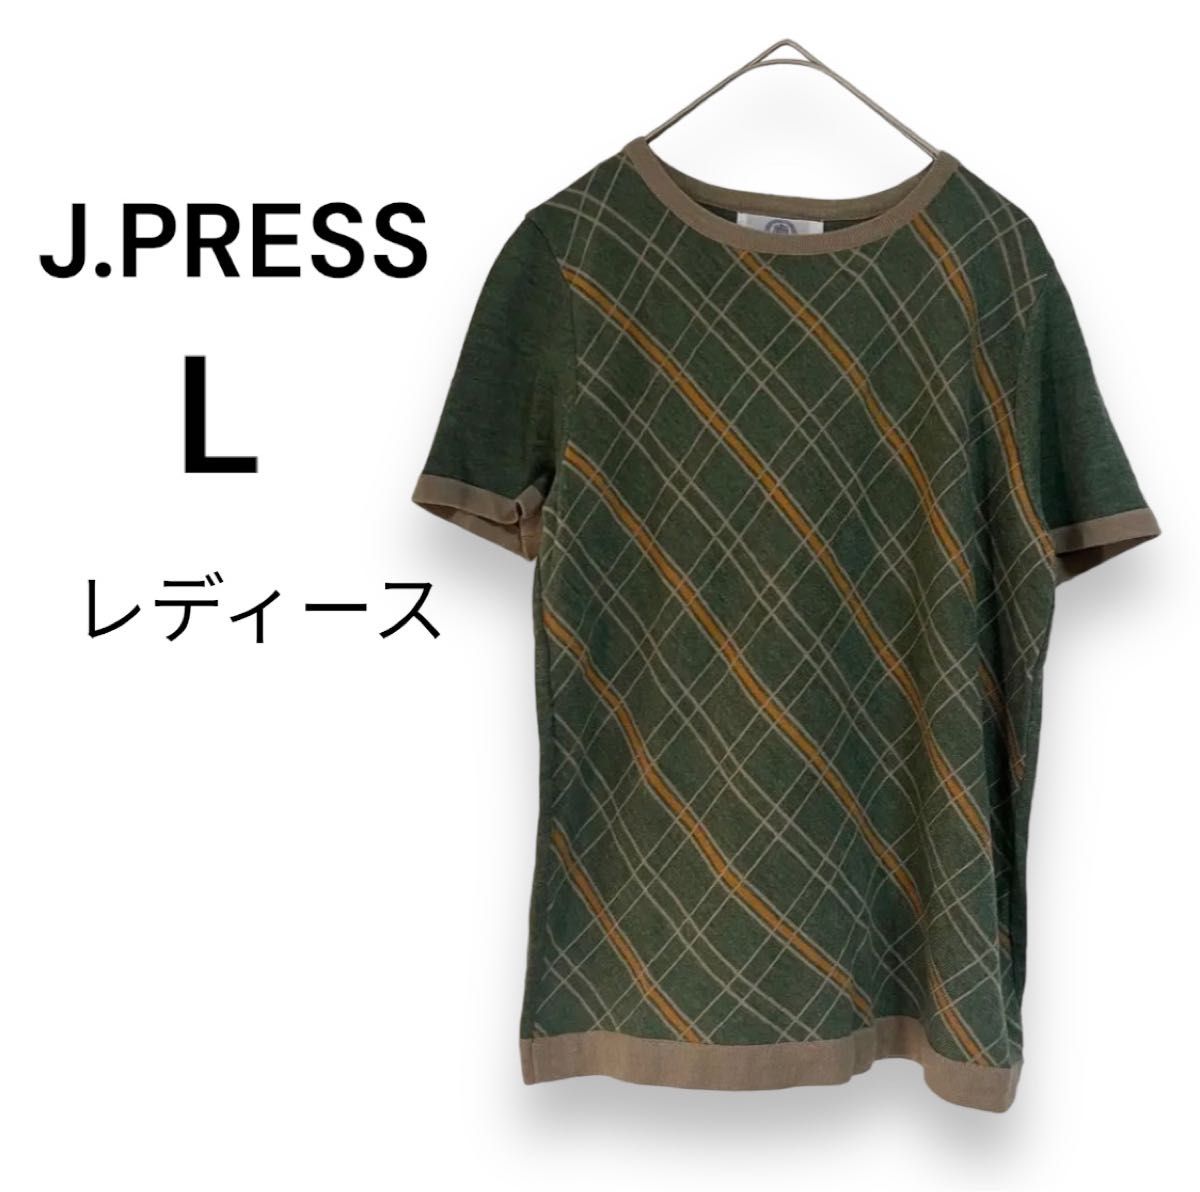 【J.PRESS】ジェイプレス  レディース半袖 Tシャツ  カットソー チェック柄 緑 おしゃれ 